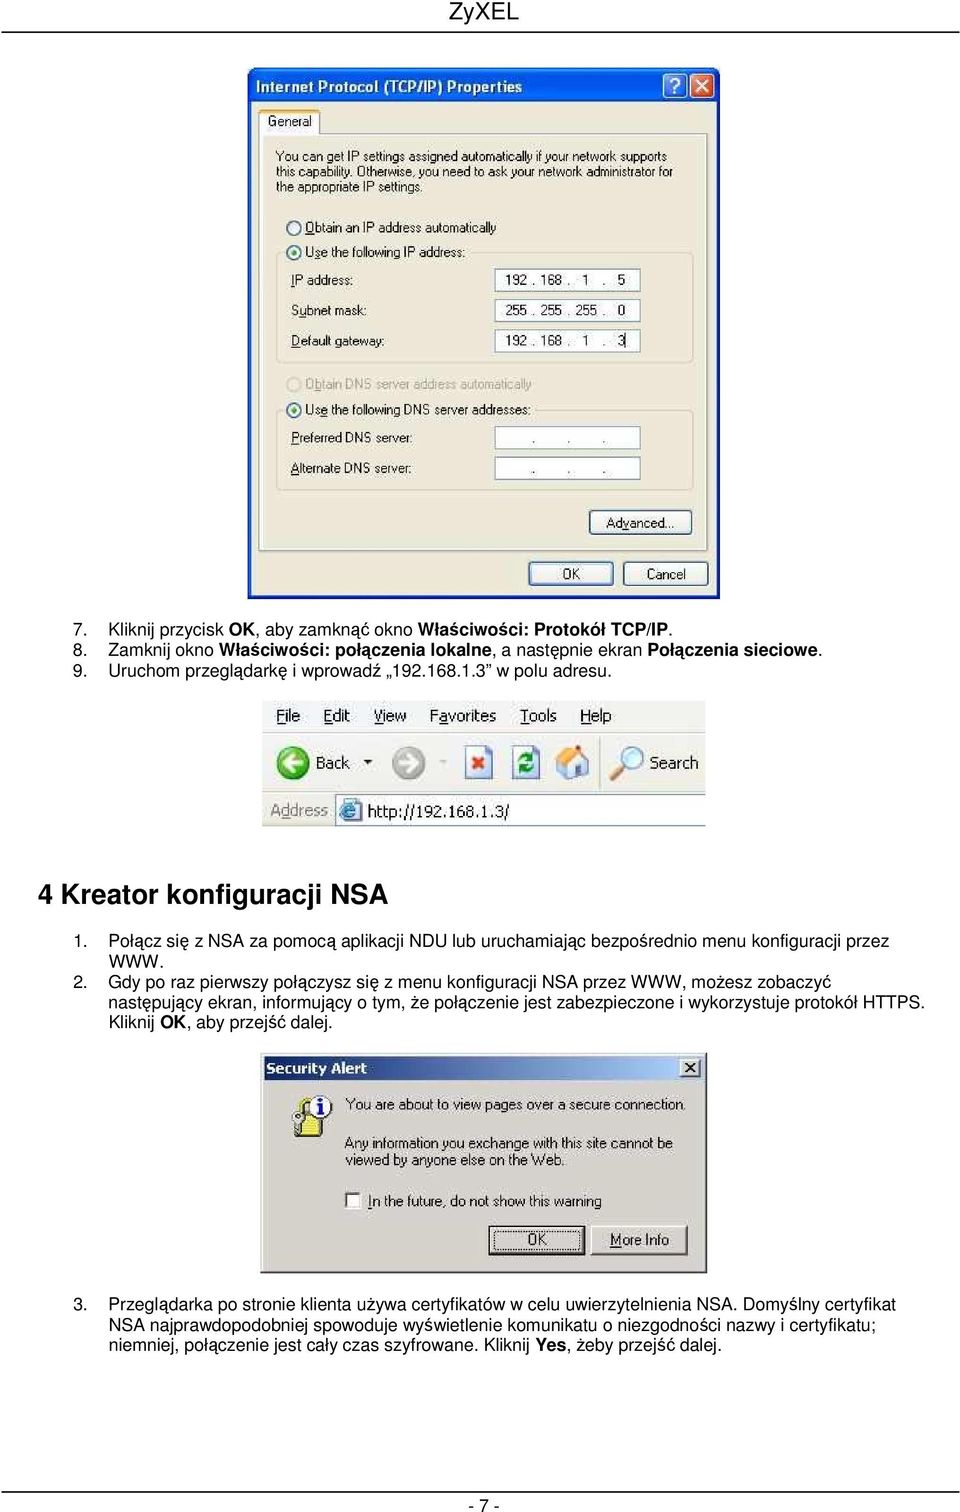 Gdy po raz pierwszy połączysz się z menu konfiguracji NSA przez WWW, moŝesz zobaczyć następujący ekran, informujący o tym, Ŝe połączenie jest zabezpieczone i wykorzystuje protokół HTTPS.